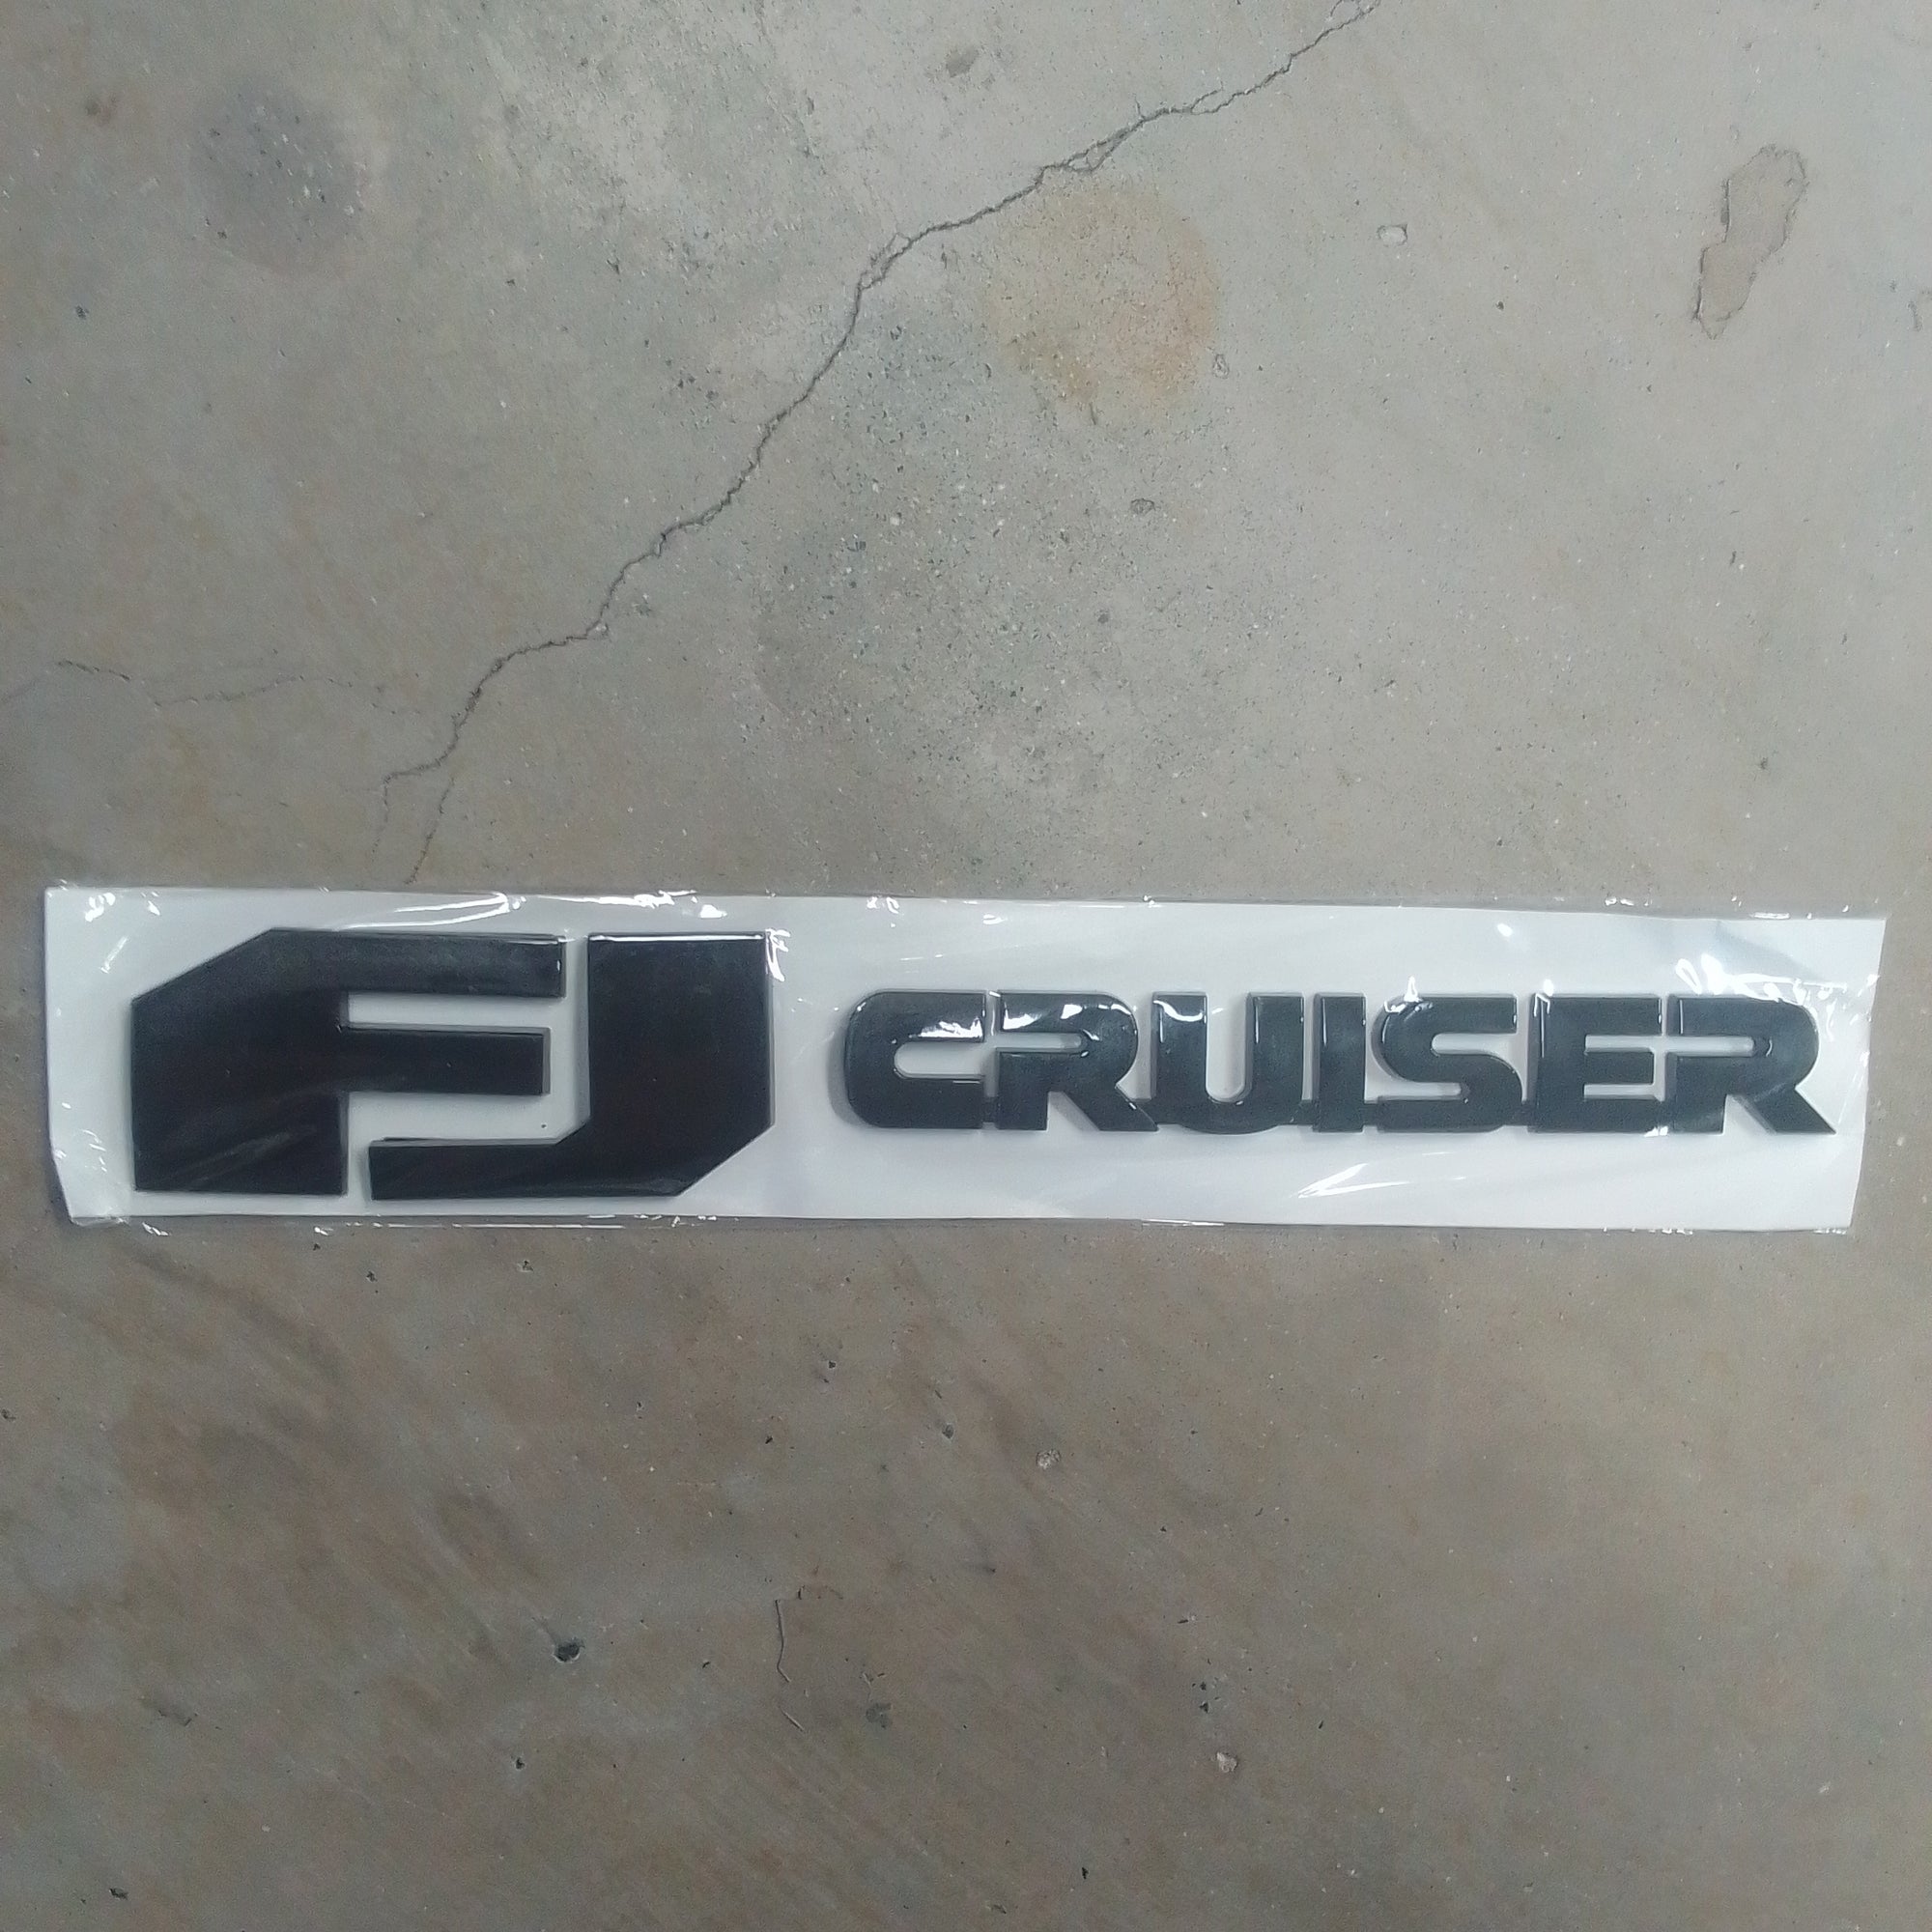 FJ Cruiser Black body/bonnet lettering 3D 230mm x 35 mm